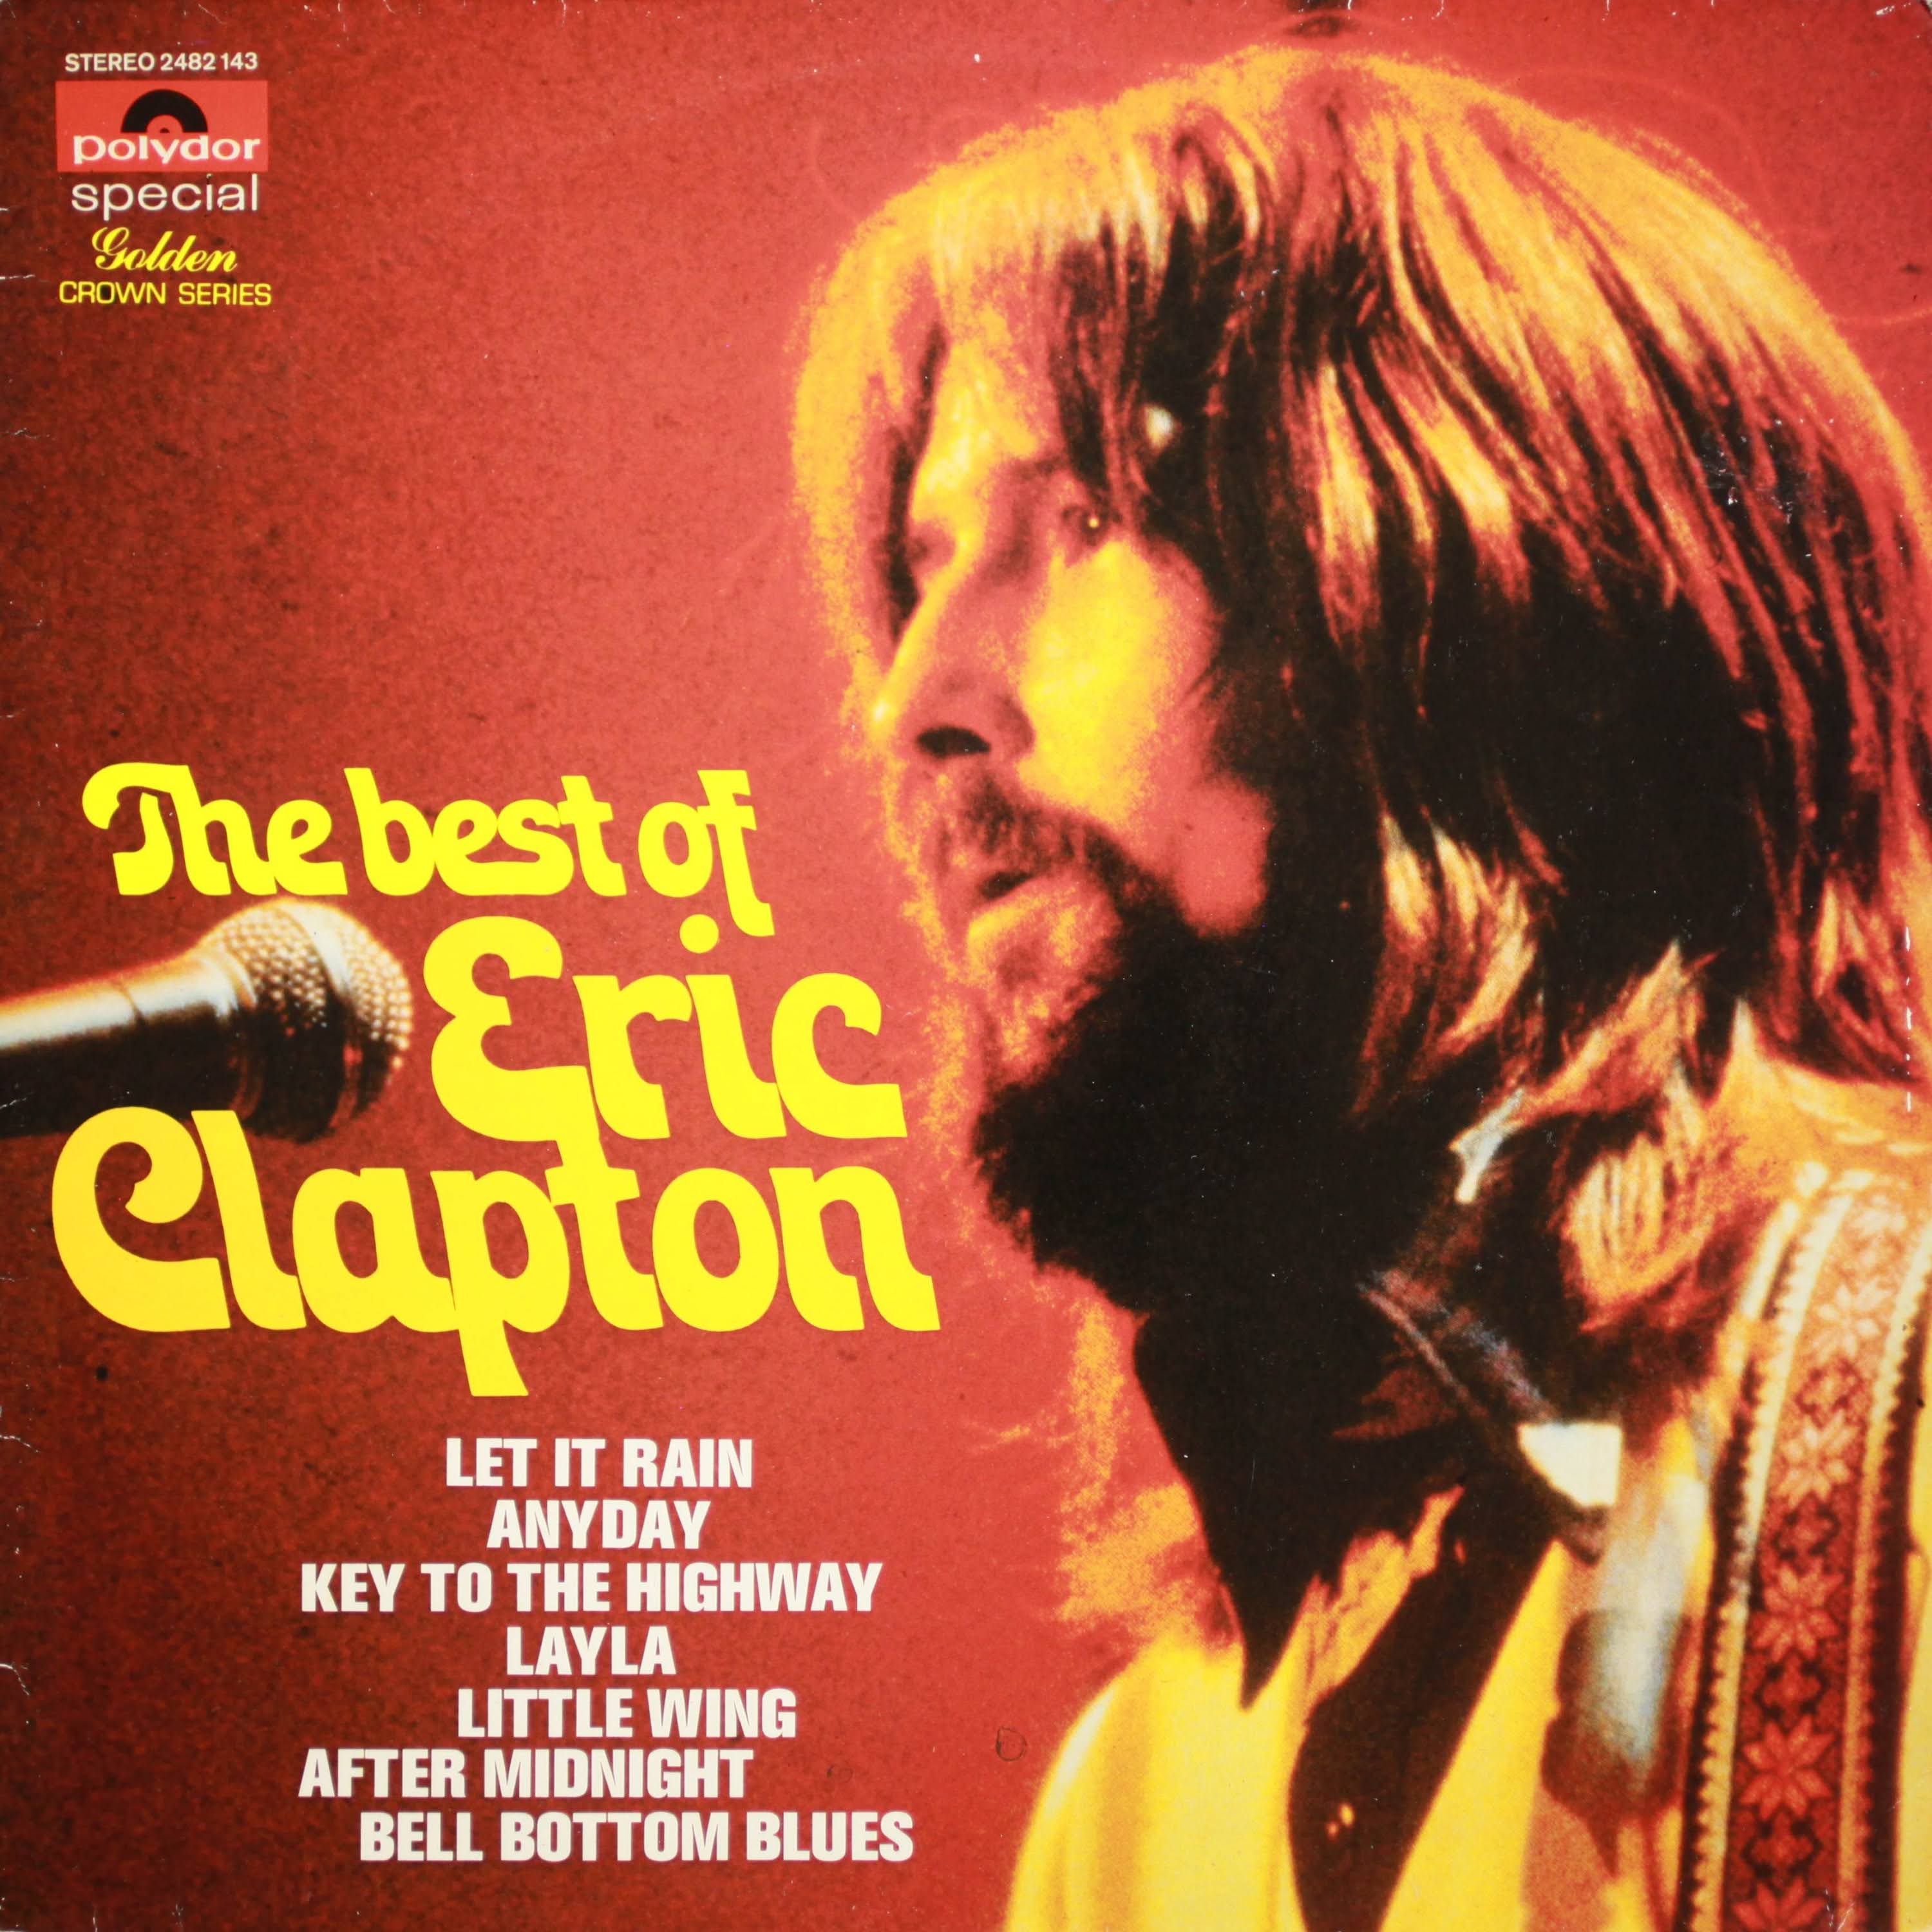 eric clapton 1970 album